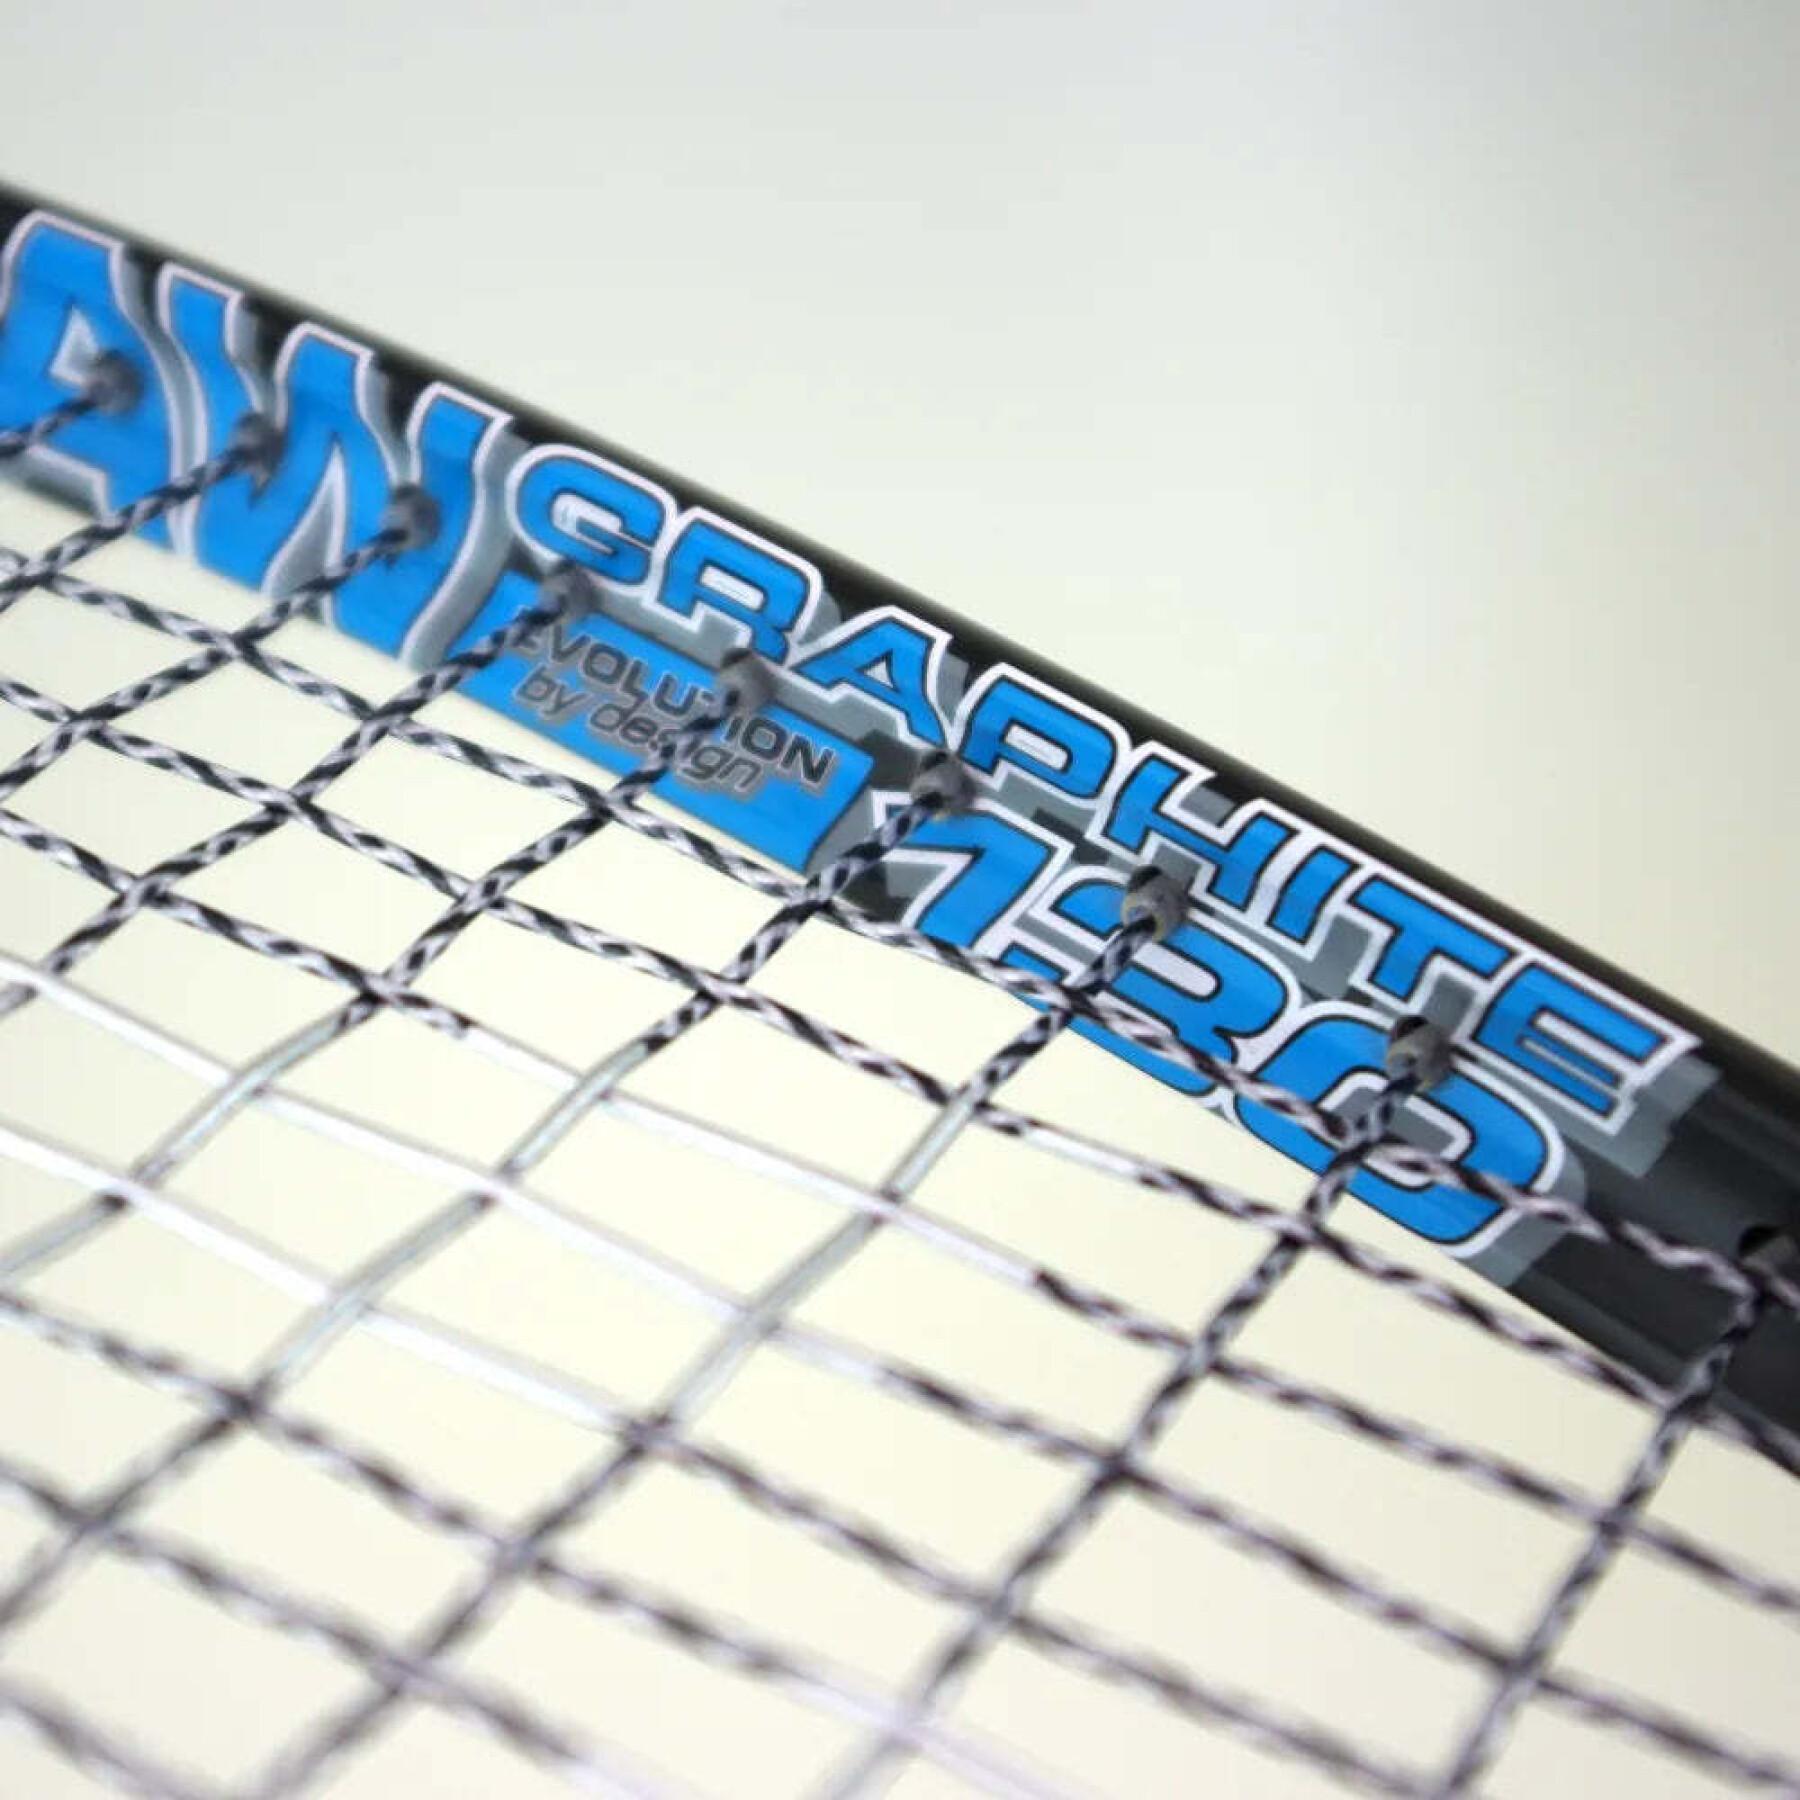 Squash racket Karakal Raw 130